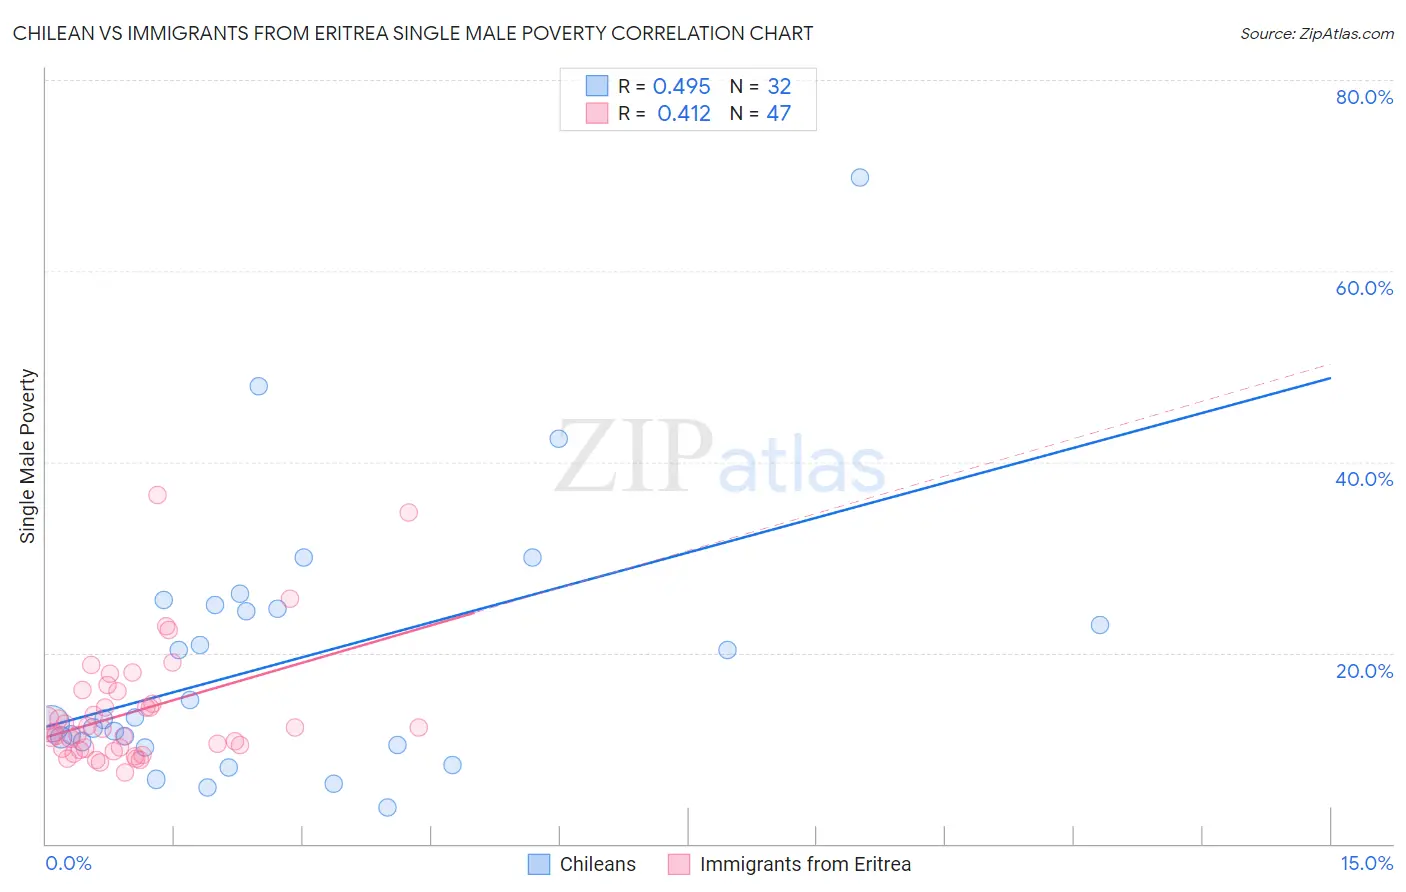 Chilean vs Immigrants from Eritrea Single Male Poverty